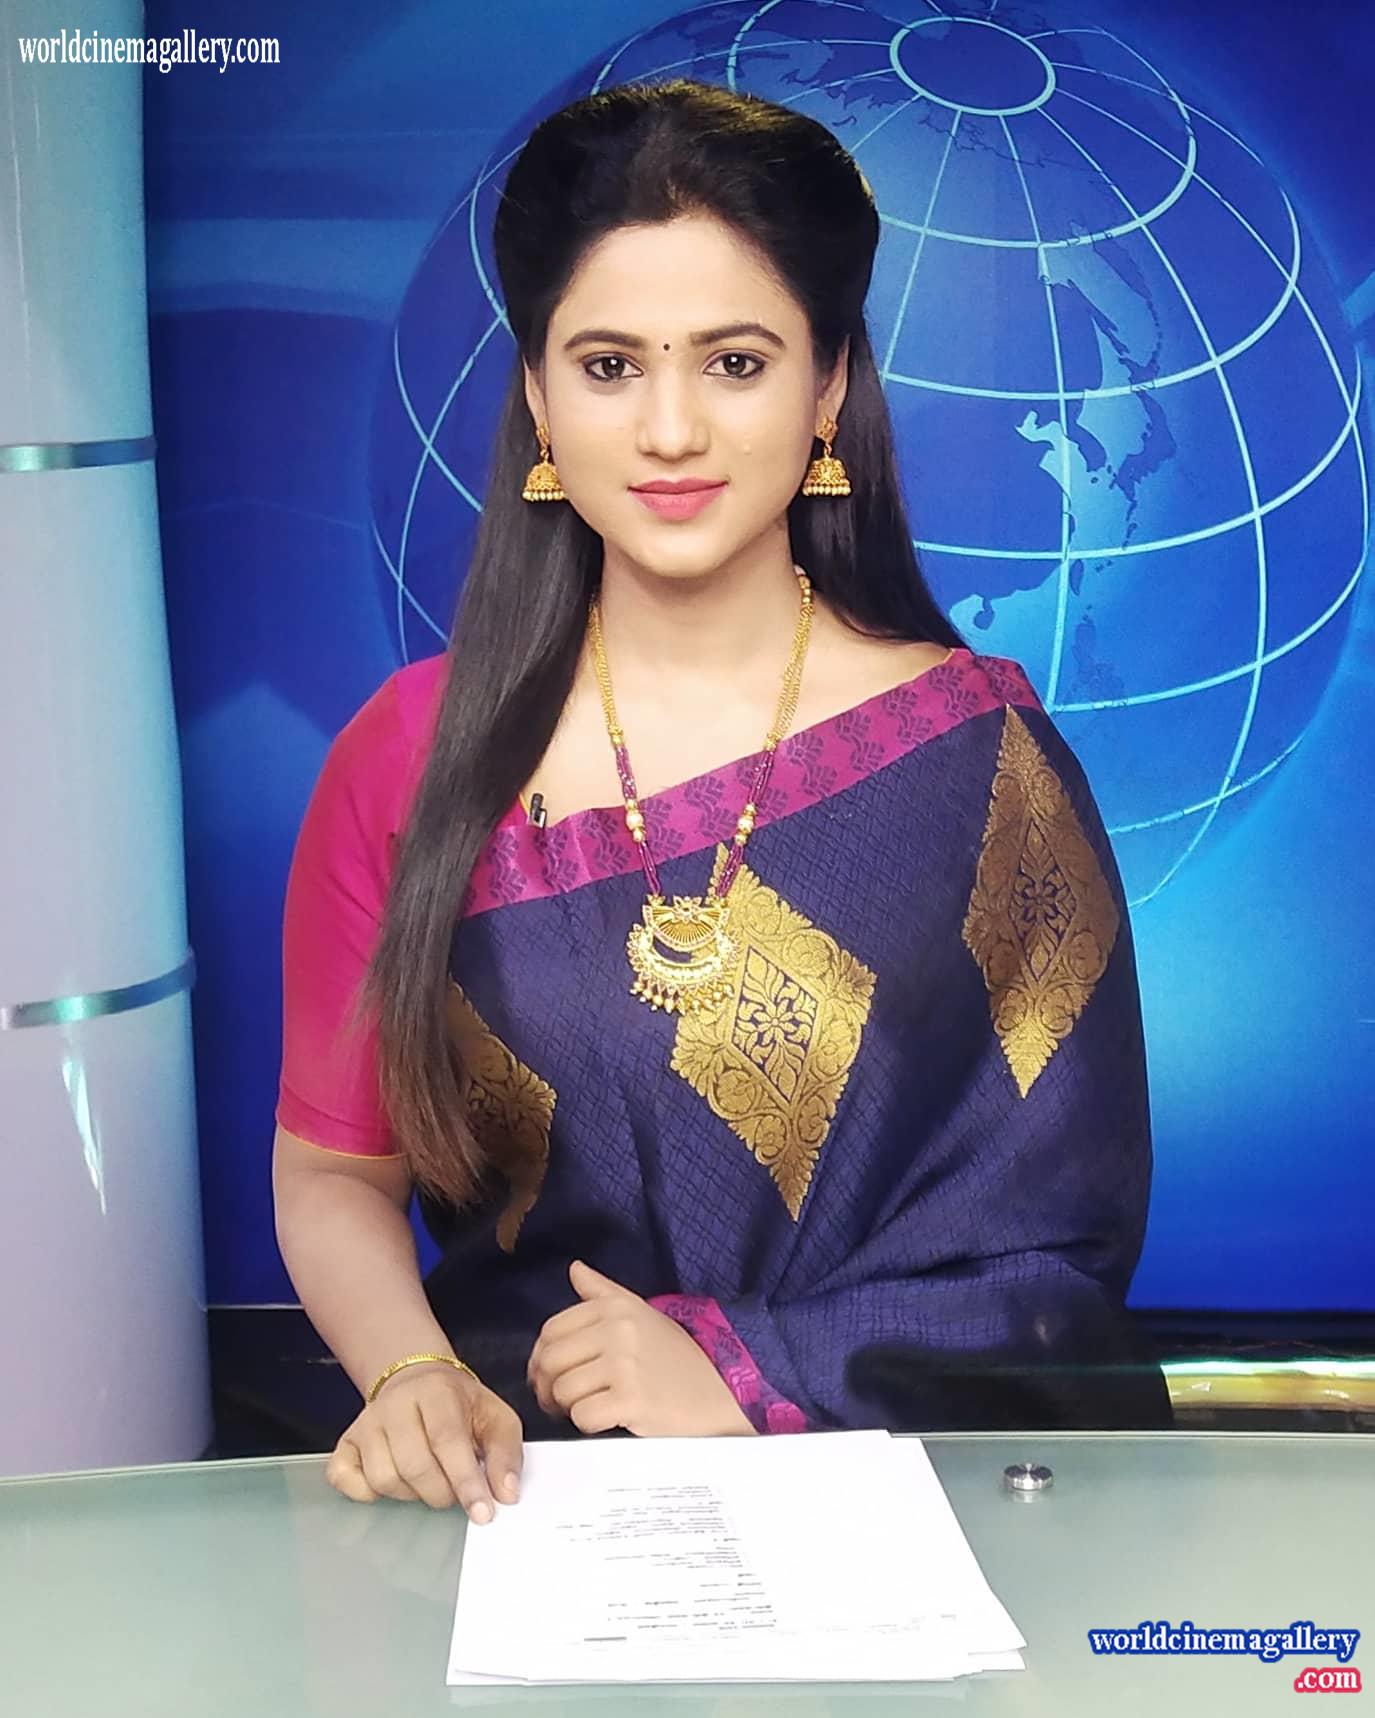 Kanmani Sekar Sun TV news Reader